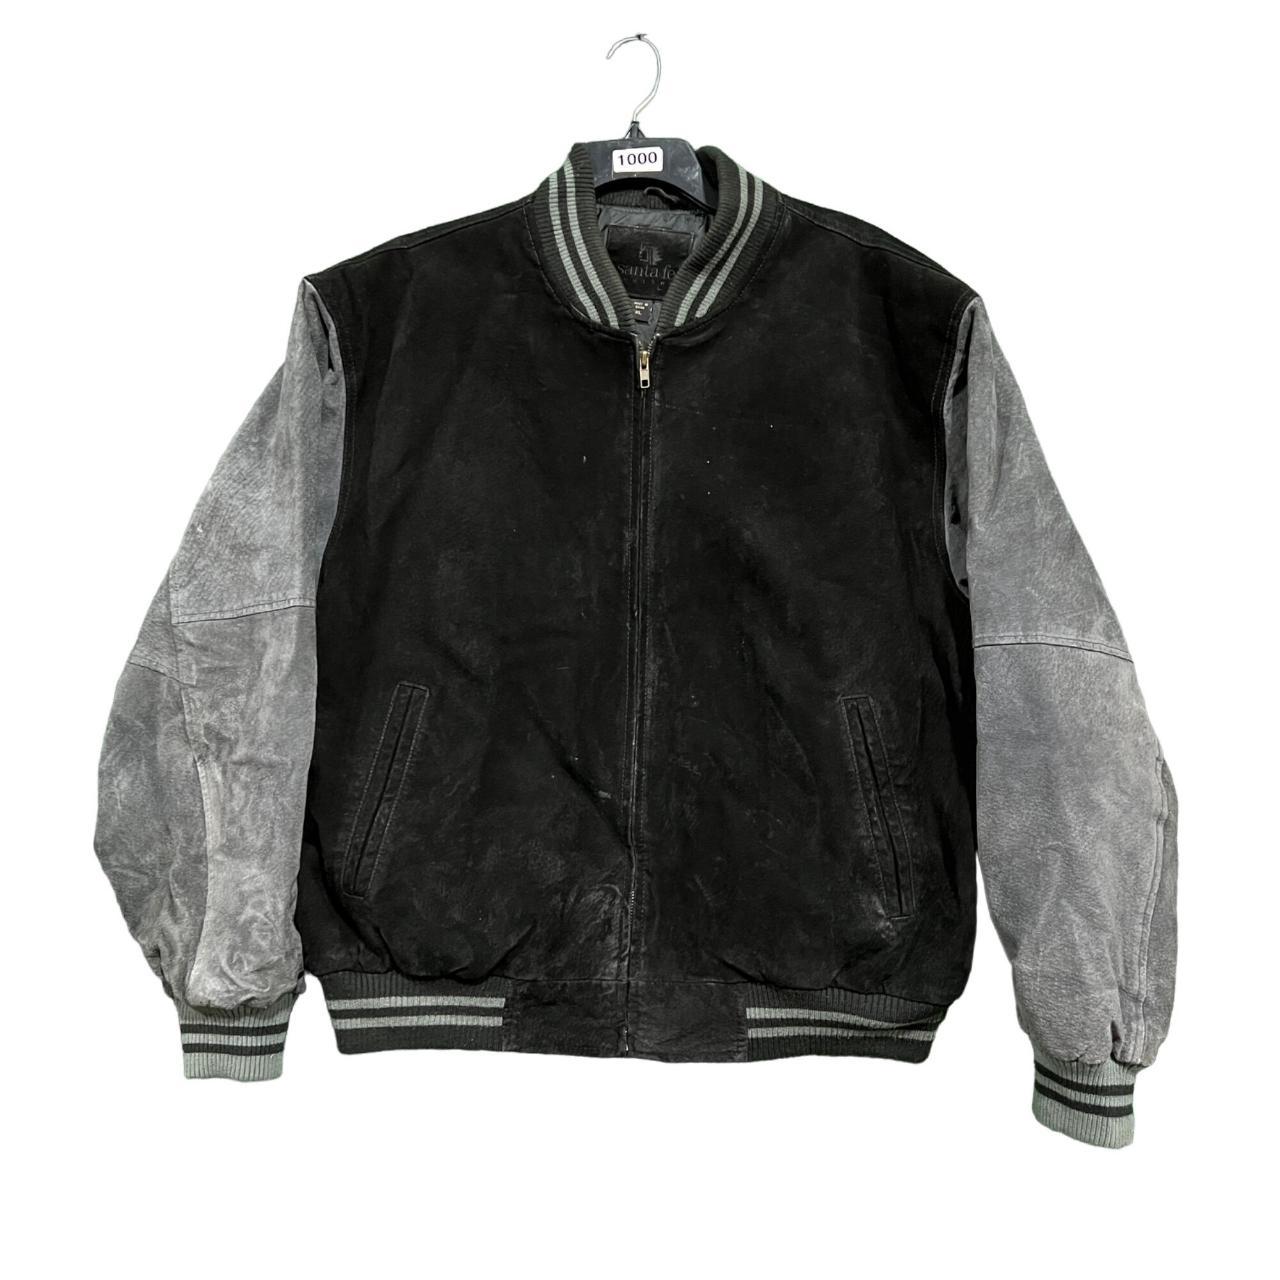 vintage Santa Fe leather jacket size... - Depop